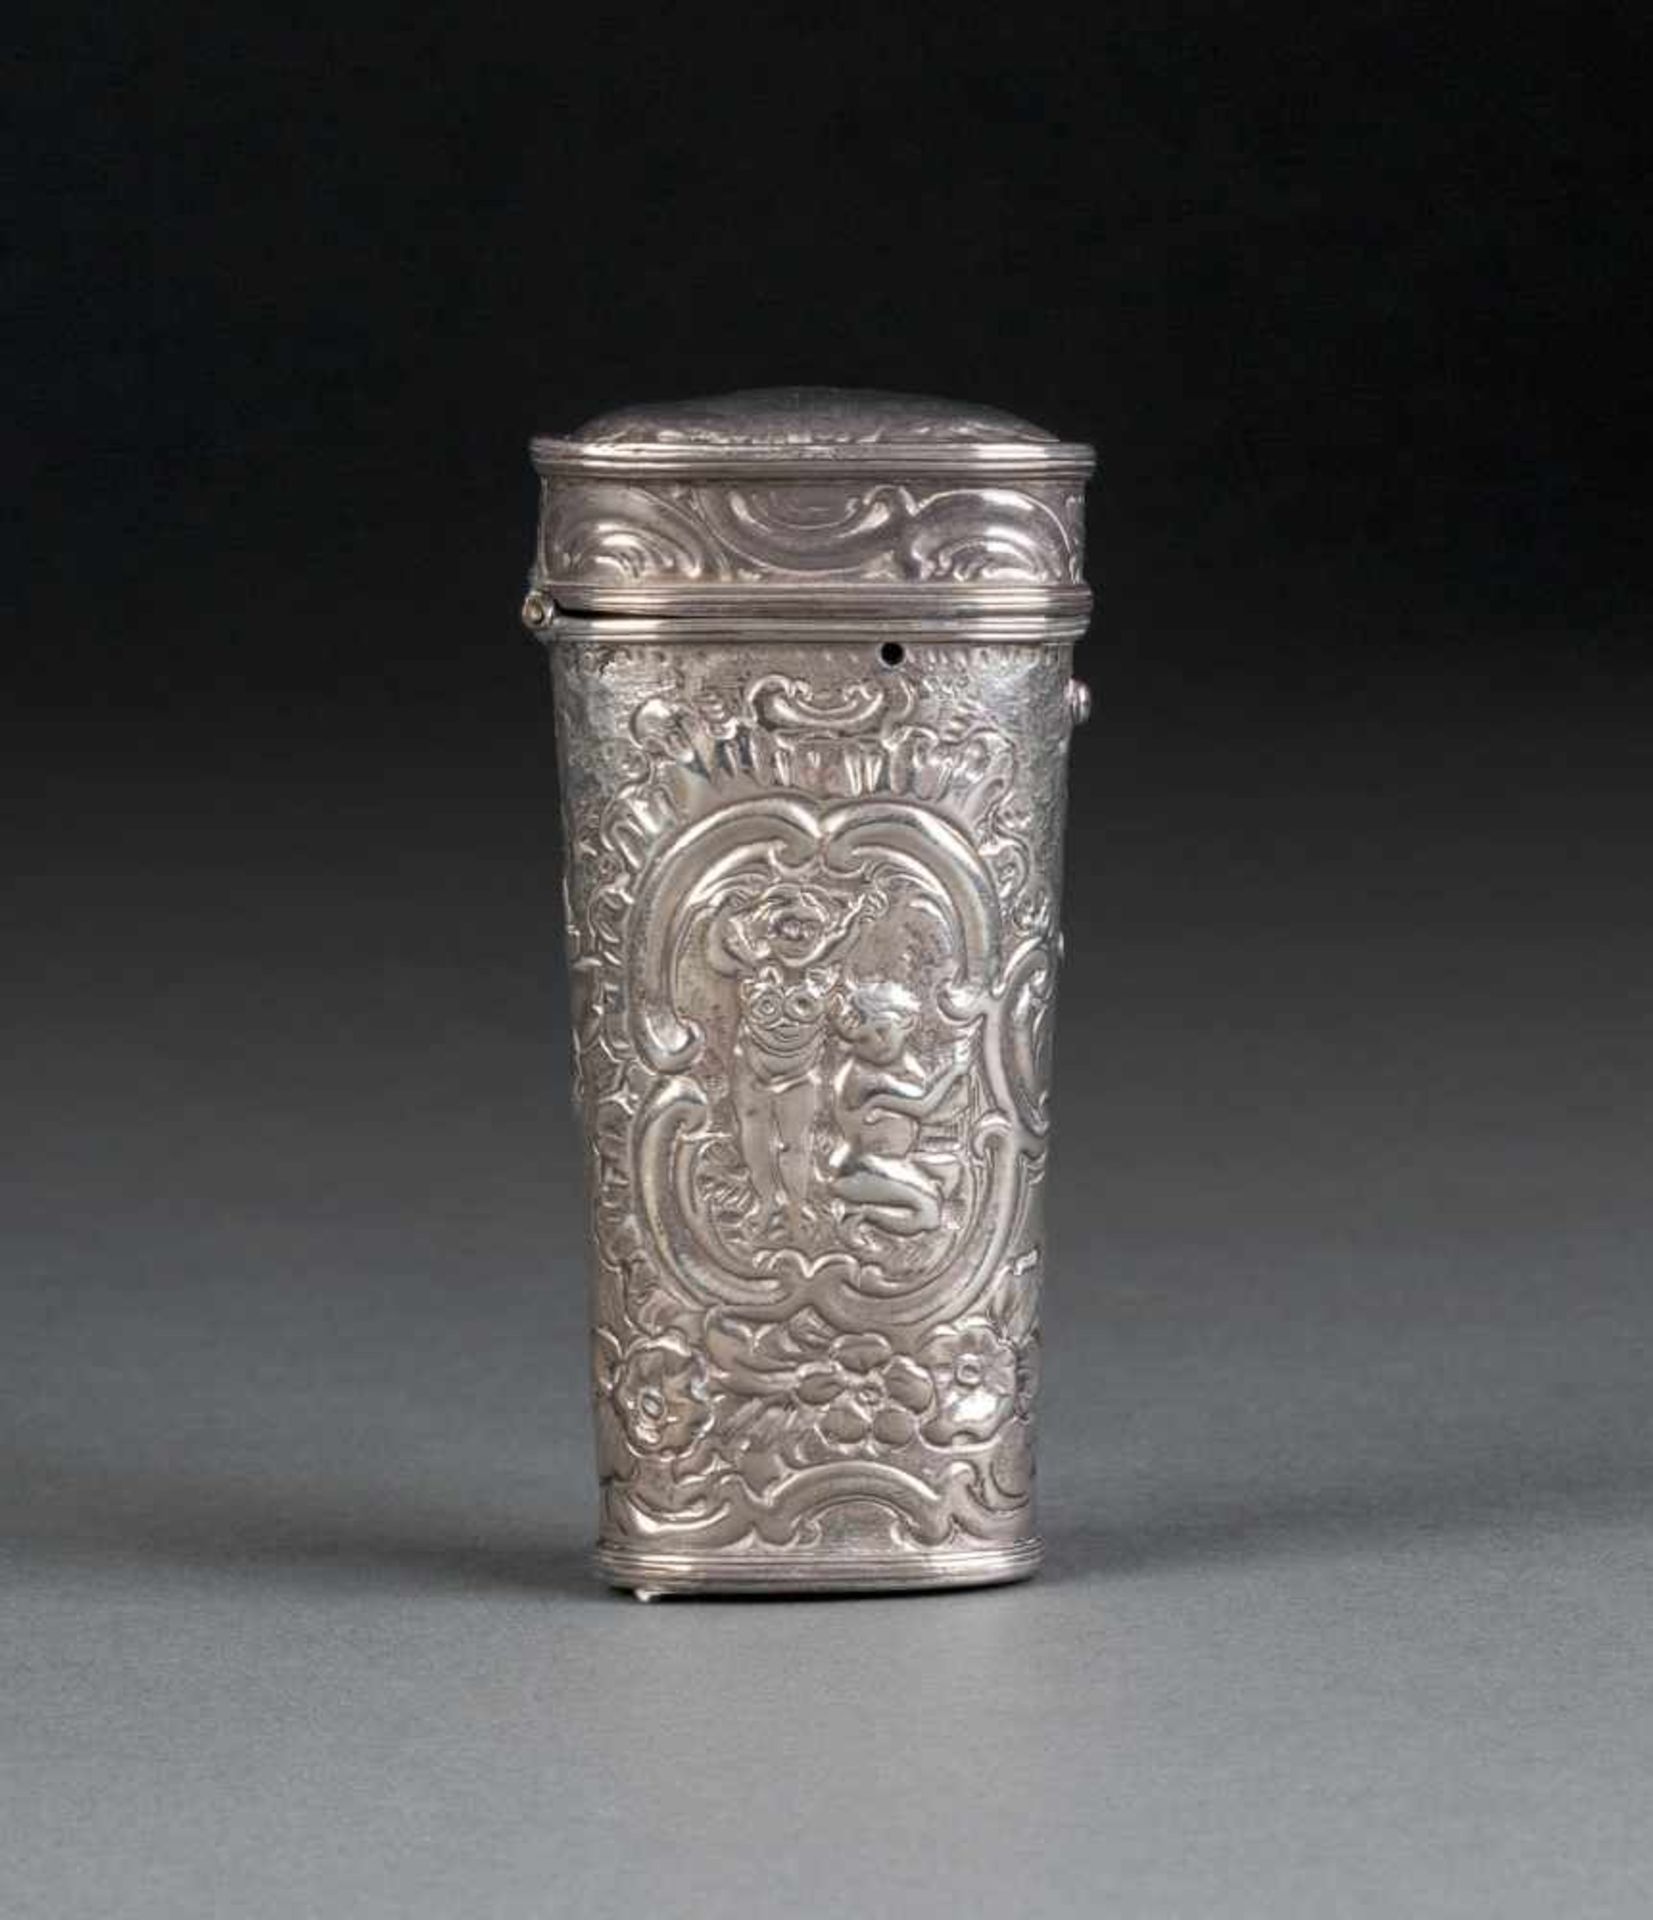 NÄHSET IM SILBERETUI Um 1770 Silber. L. 9,2 cm. Verziert mit Blumen, Rocaillen und Putti. Min.